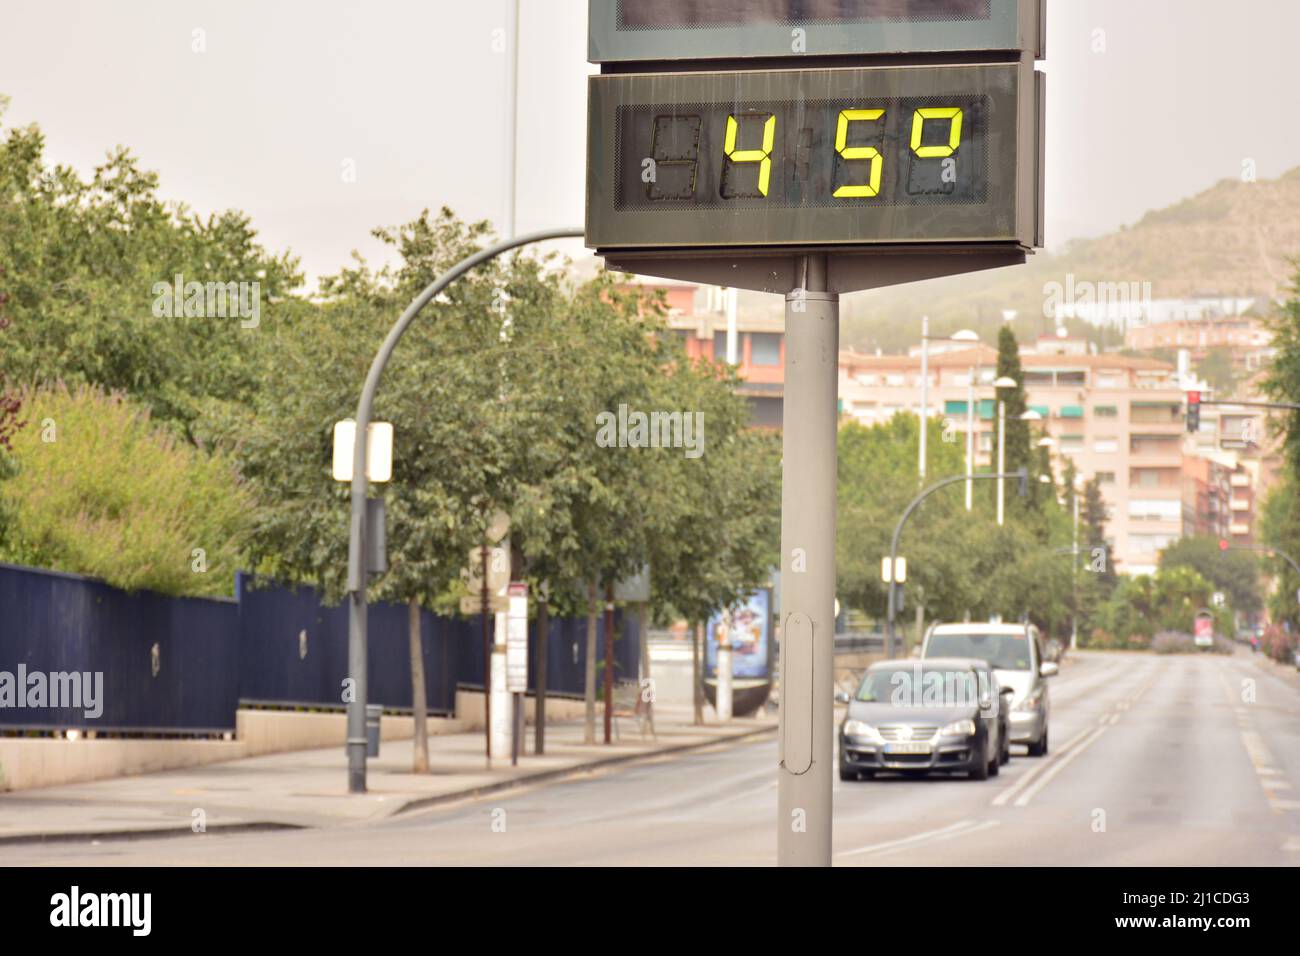 termmetro-callejero-en-una-calle-marcando-45-grados-celsius-2J1CDG3.jpg